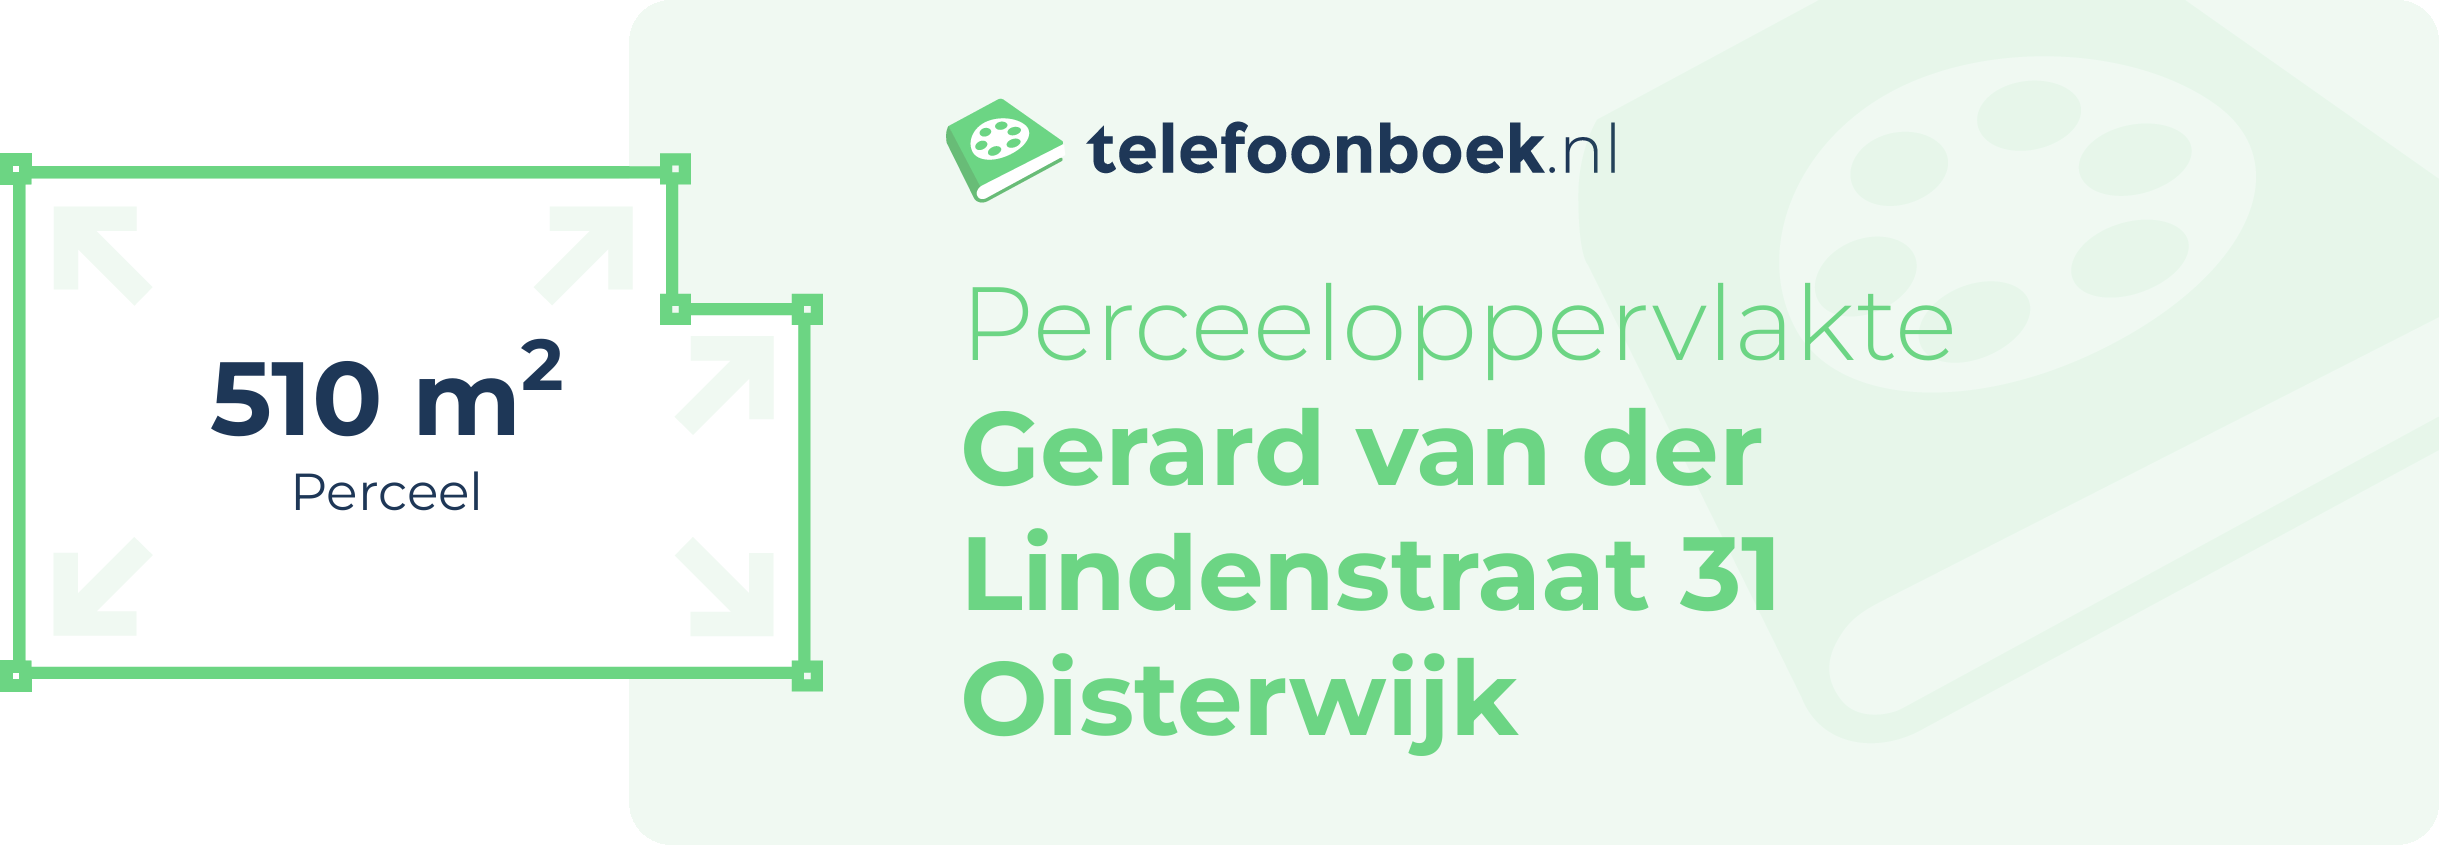 Perceeloppervlakte Gerard Van Der Lindenstraat 31 Oisterwijk